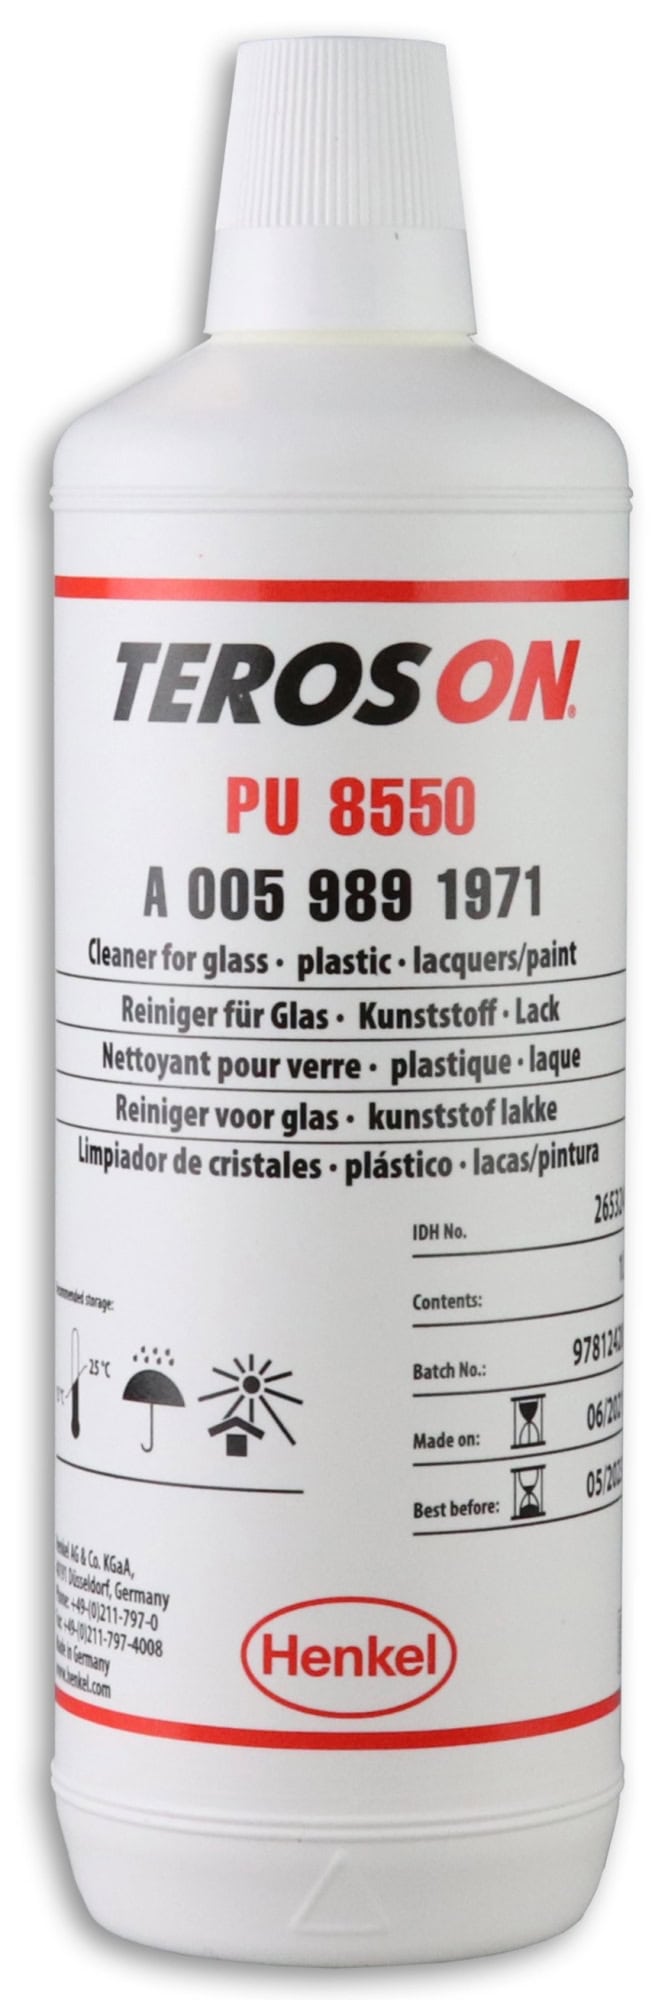 Henkel™ Teroson® Reiniger PU 8550, 1L, Für Hochglanzoberflächen und Glas